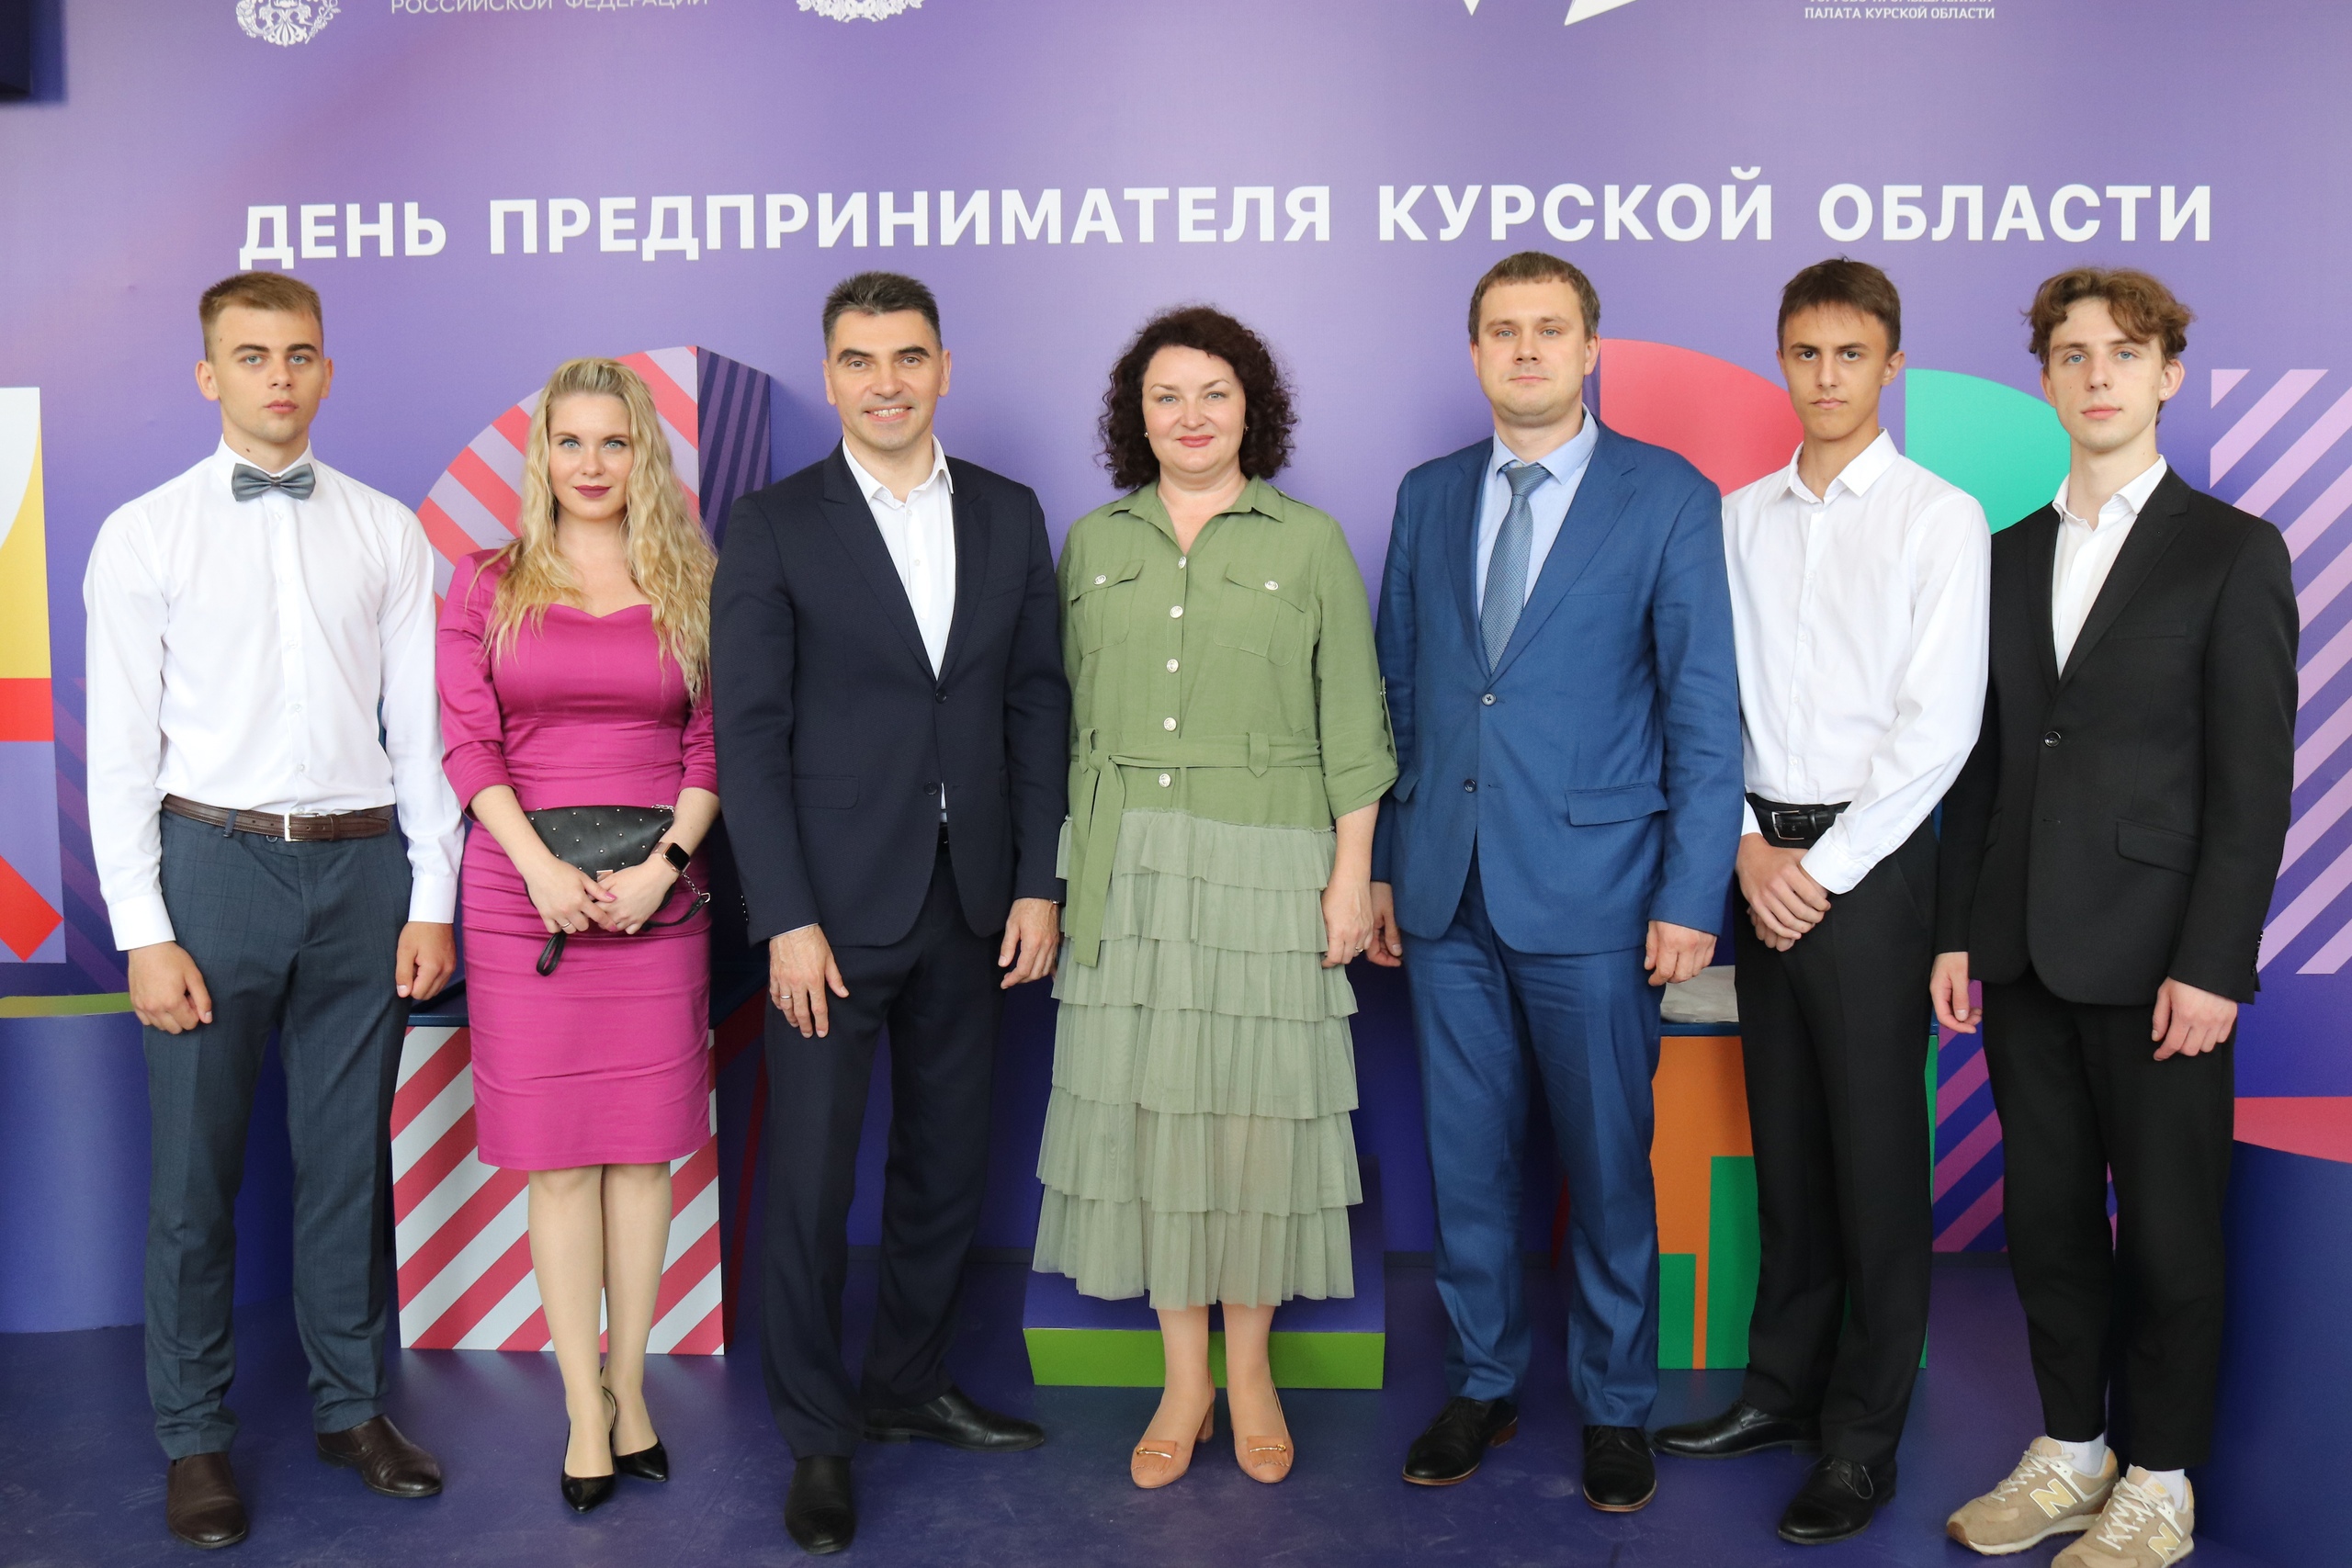 25 мая состоялся региональный форум «День предпринимателя Курской области».